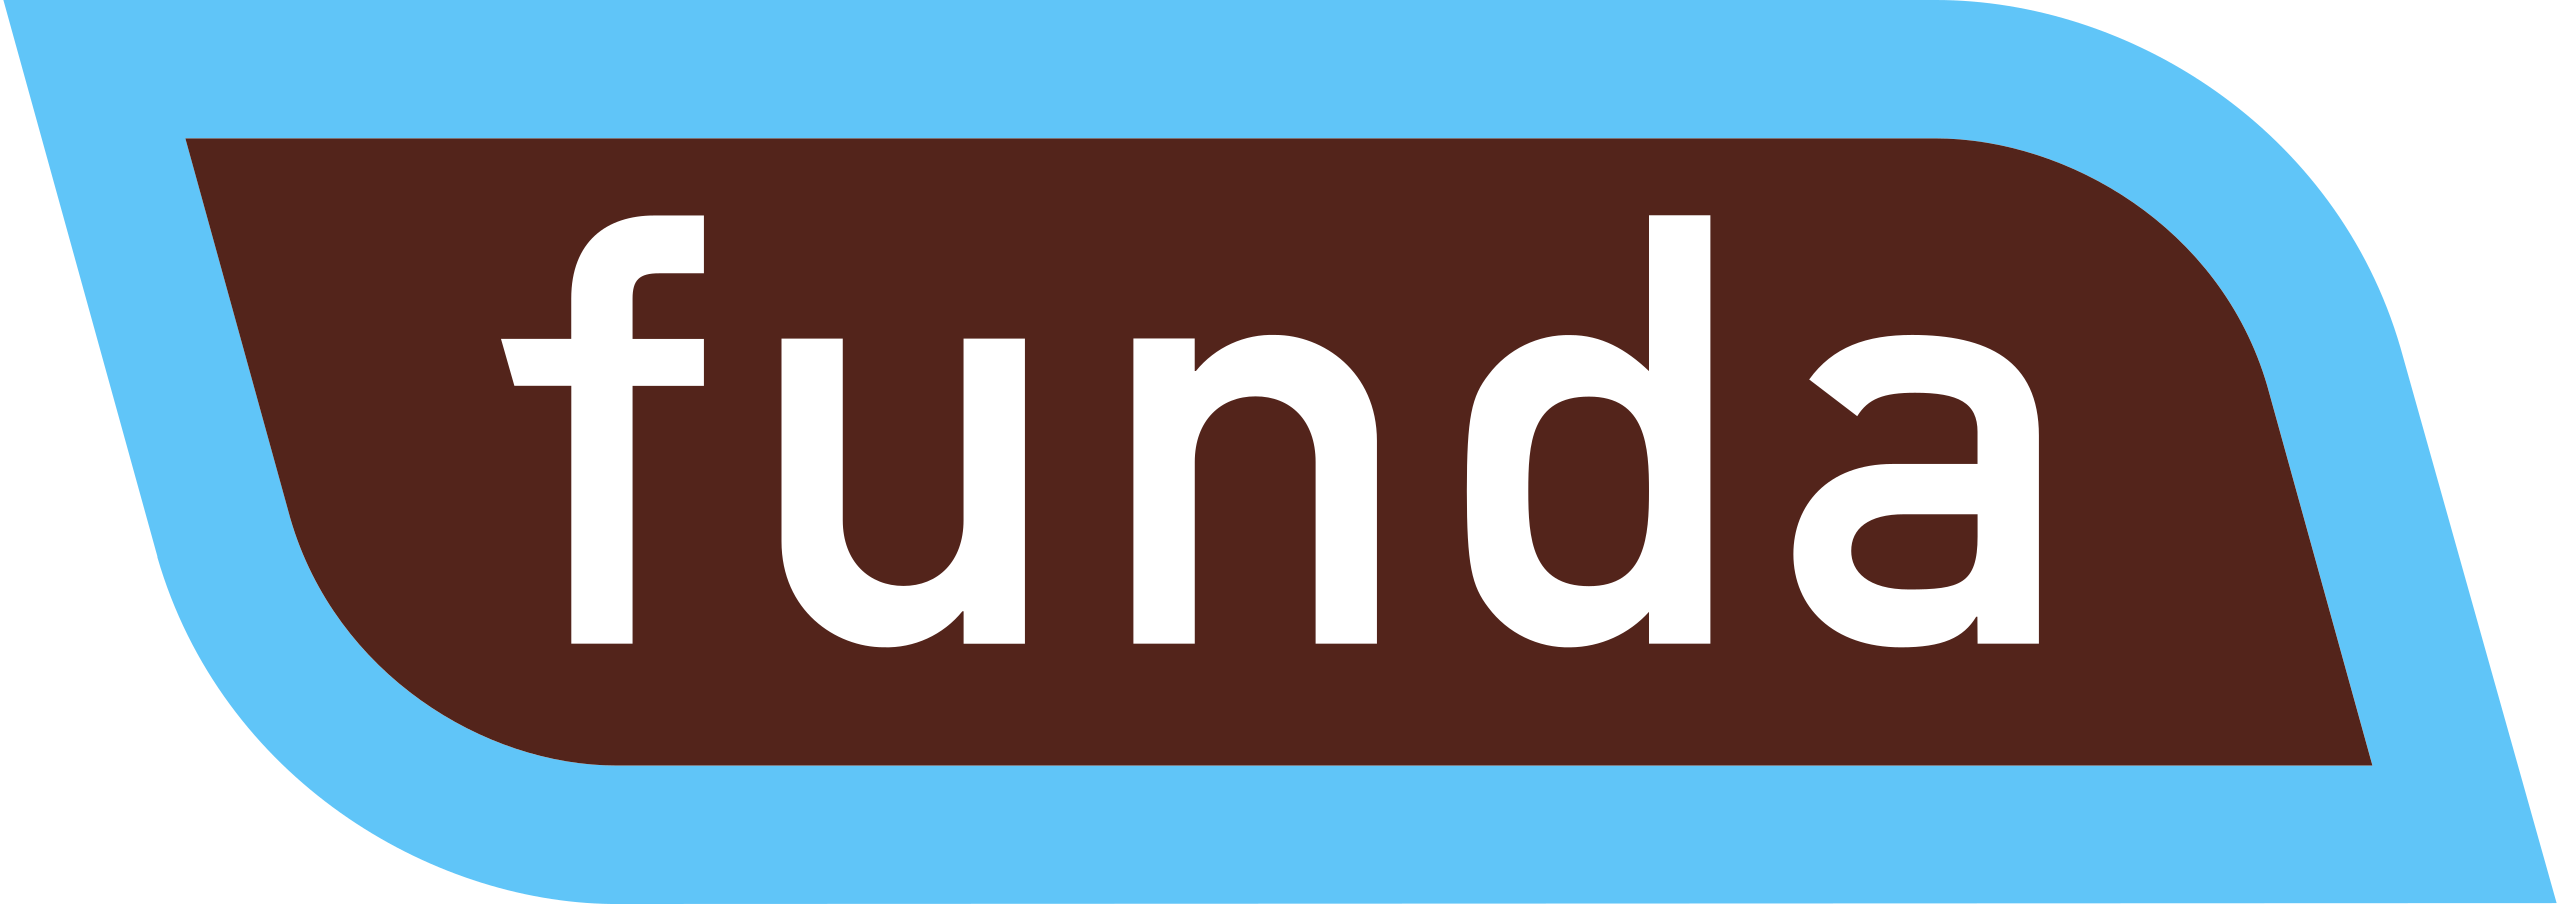 Funda_logo